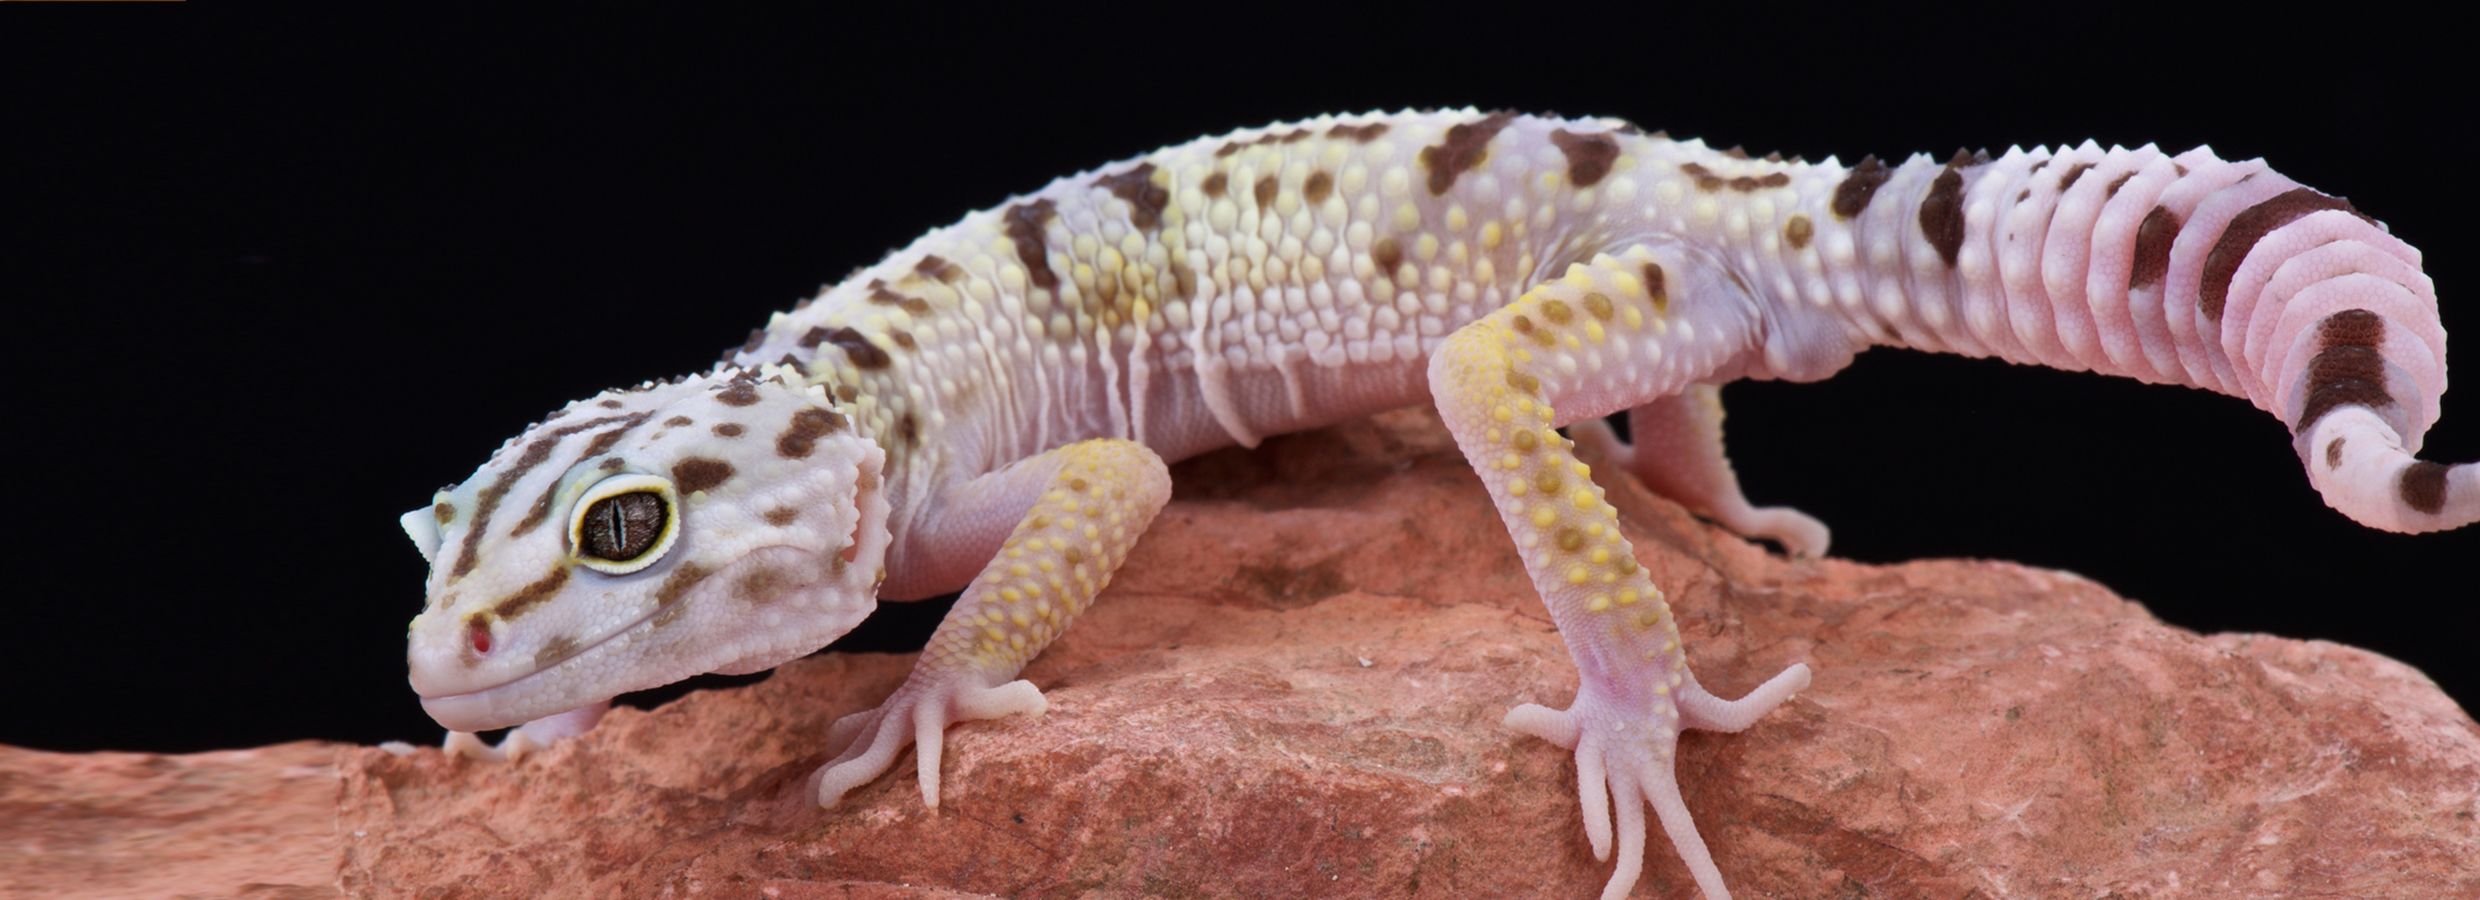 leopard gecko terrarium kit